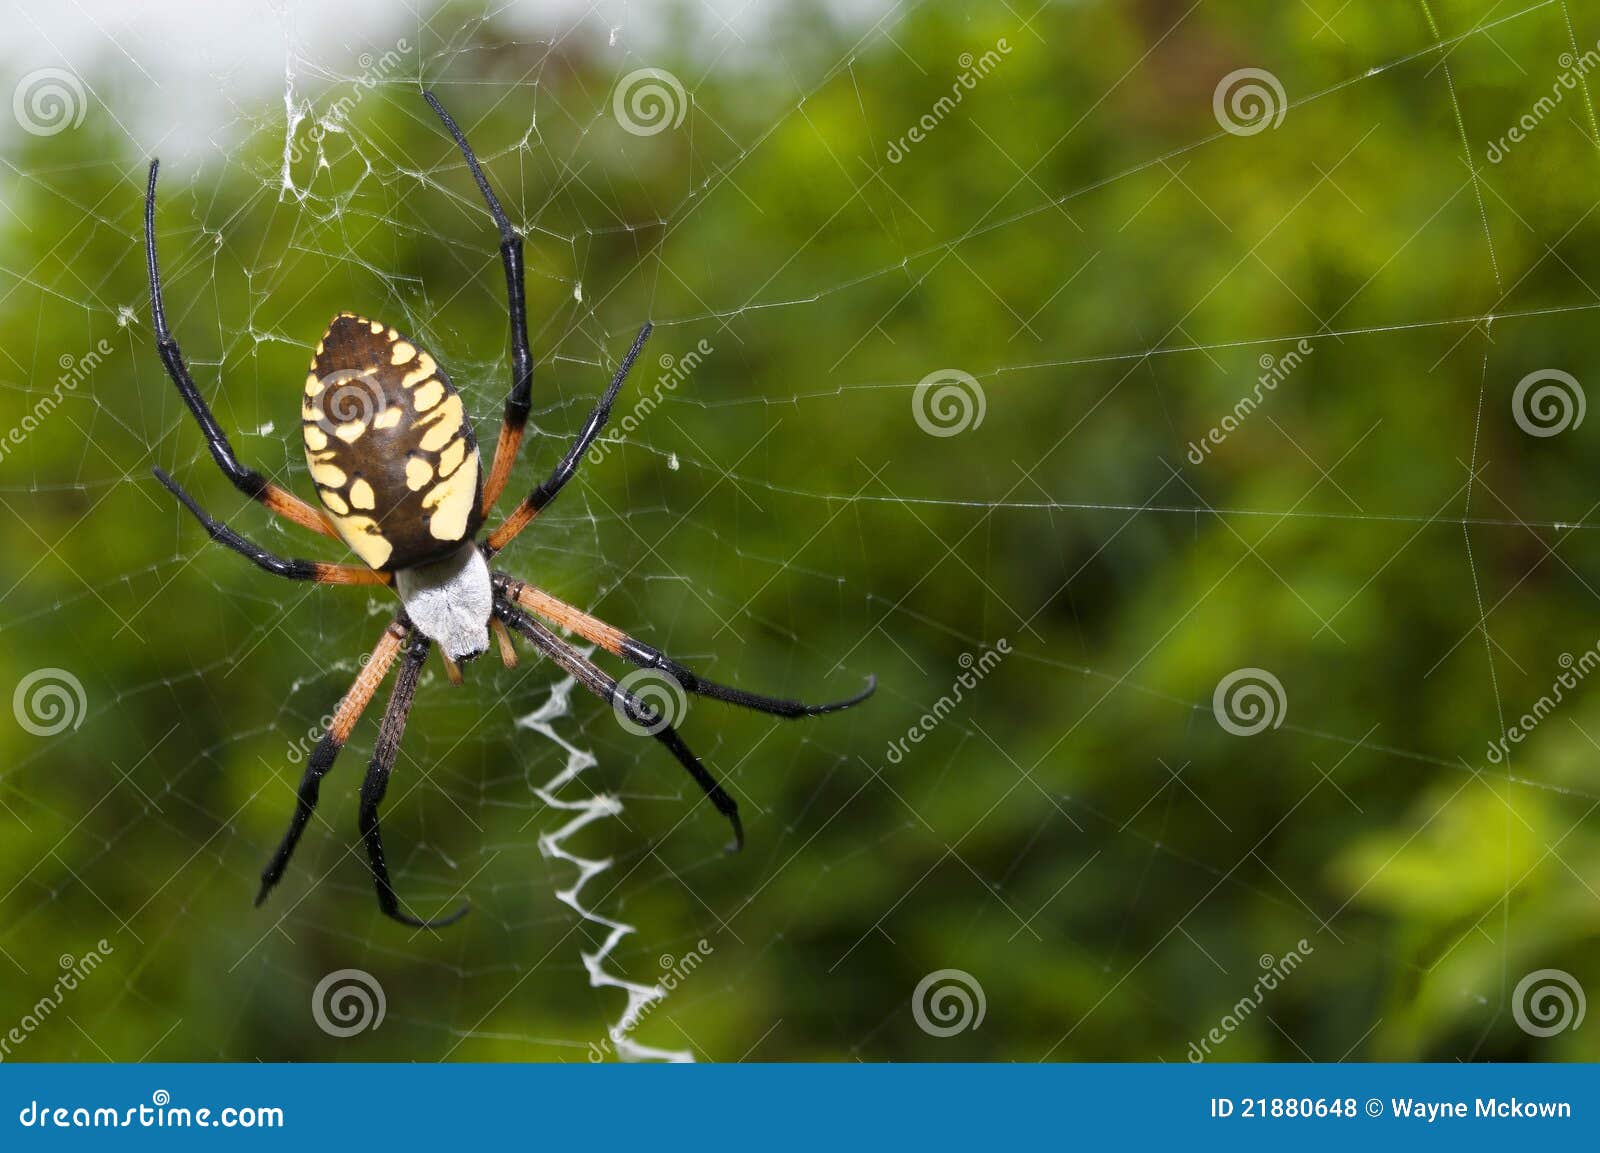 garden spider on a web